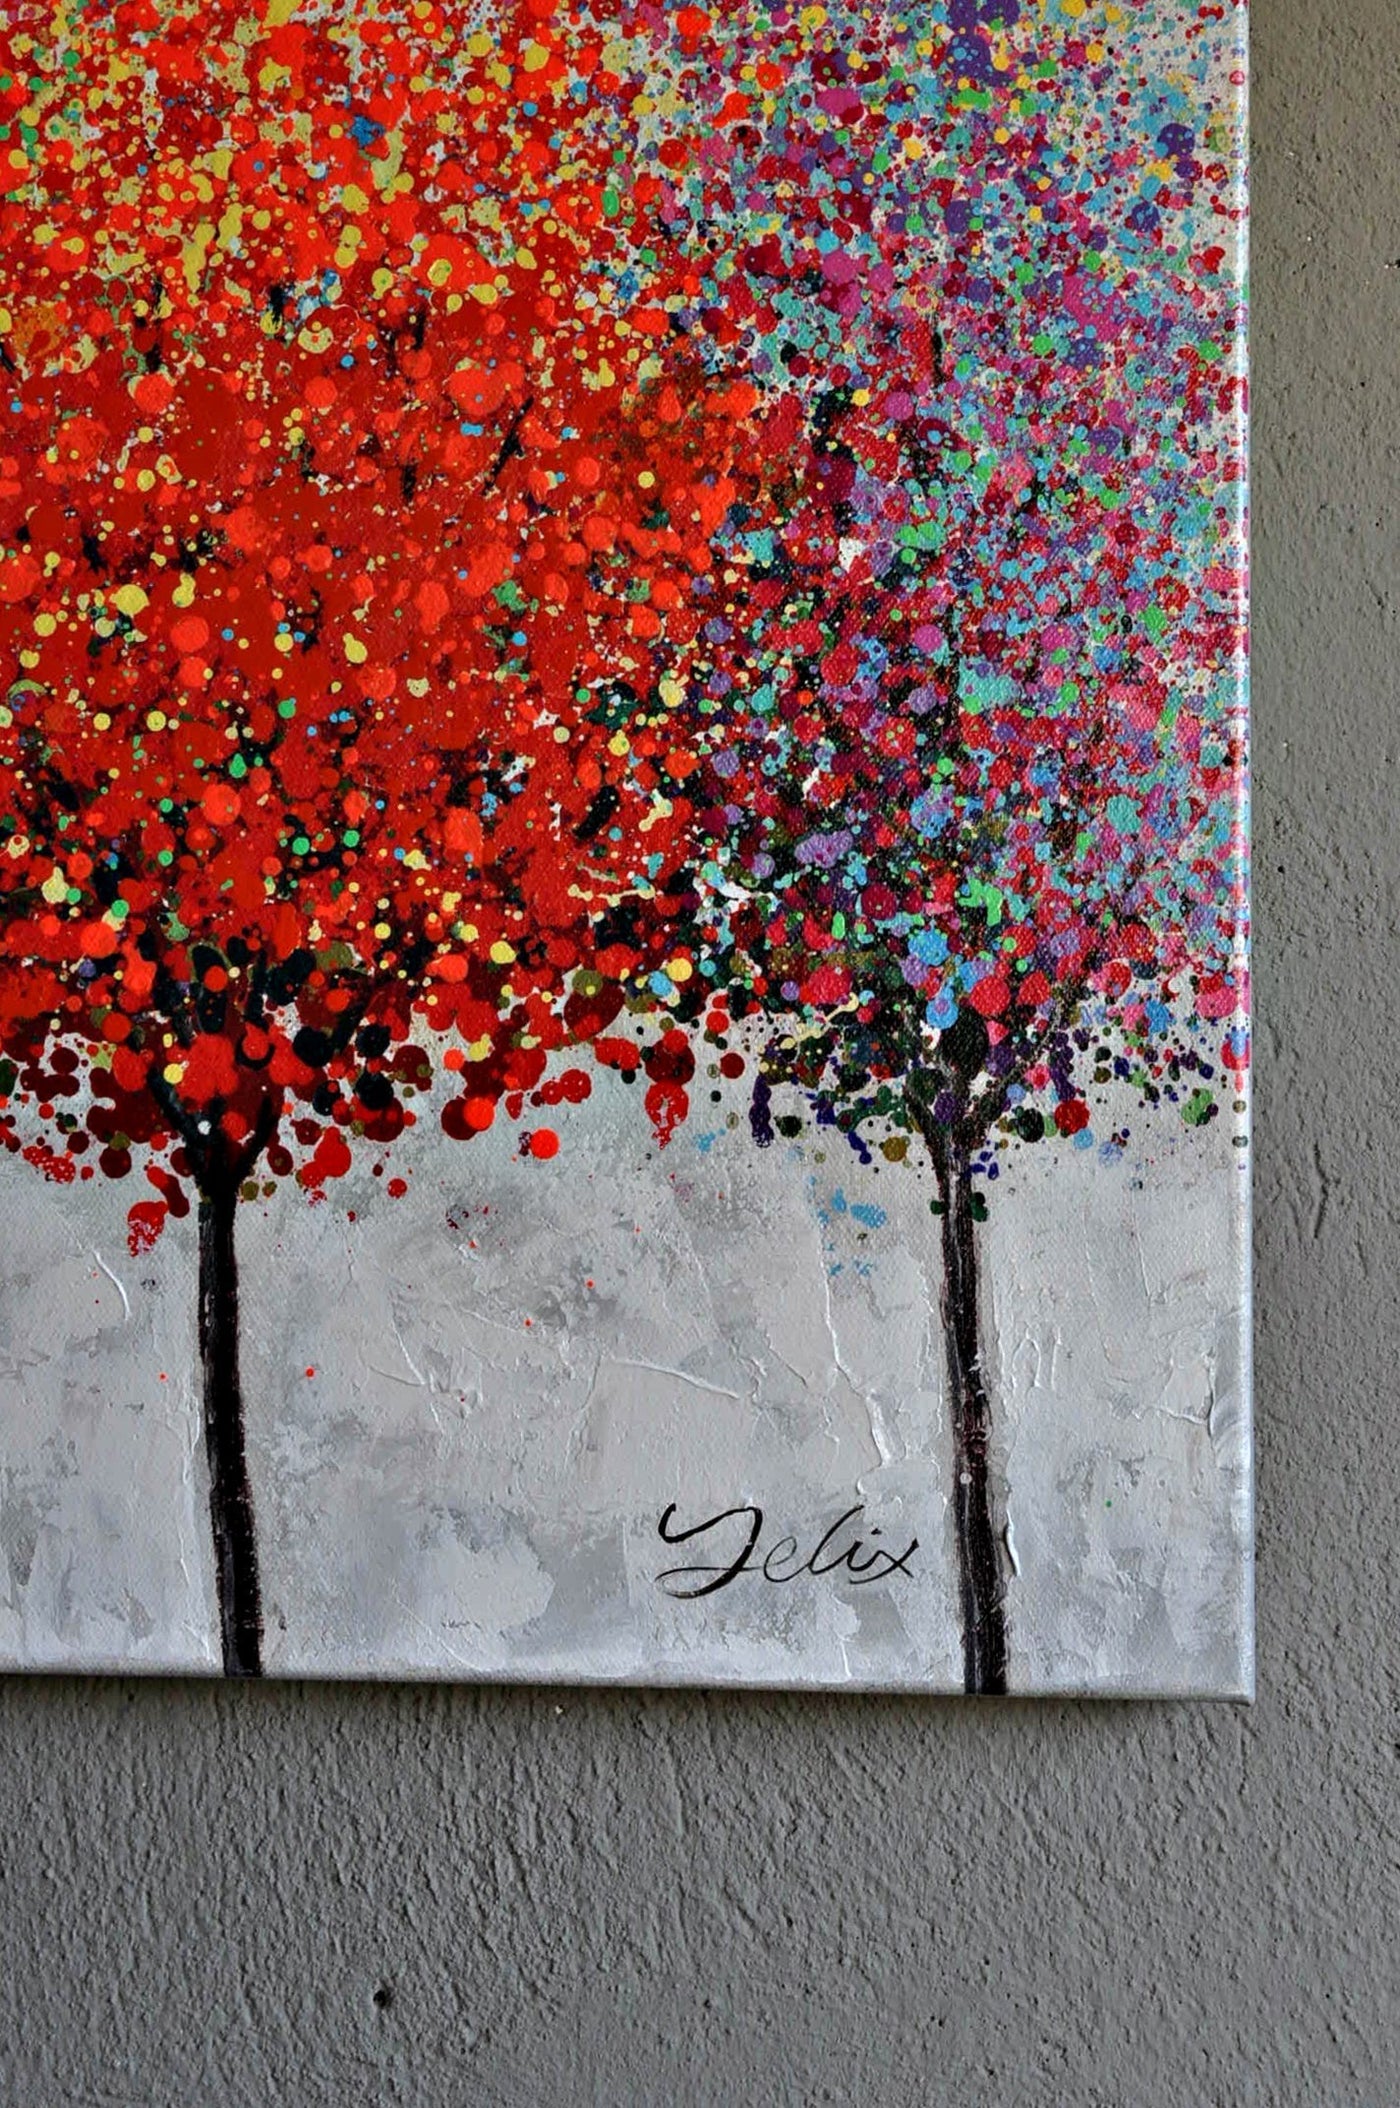 Leinwand Baum/Bäume - Herbstlaub im Oktober 150 x 50 cm Schöne Deko